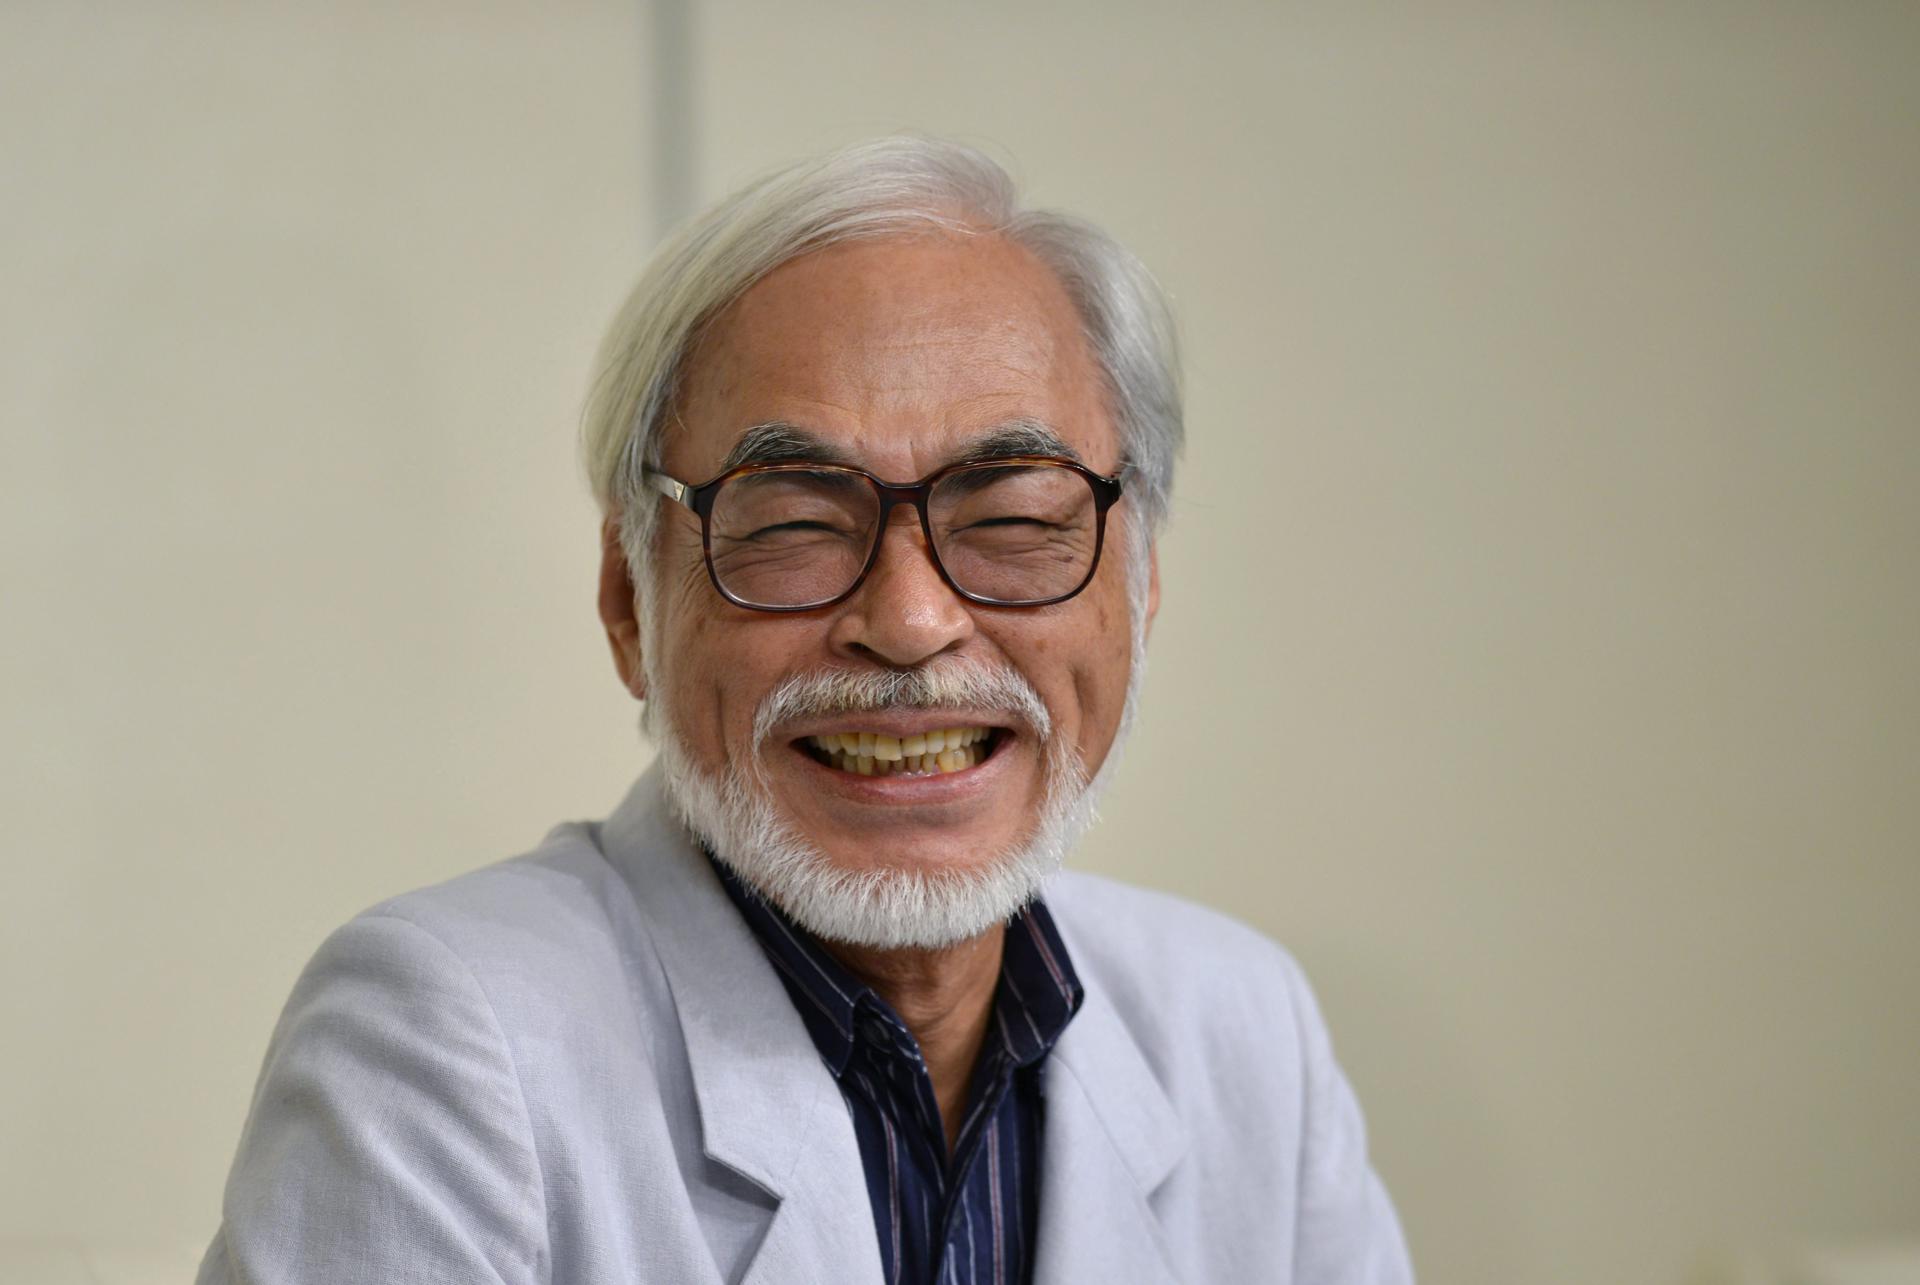 El director de cine japonés Hayao Miyakazi sonríe durante una rueda de prensa. Imagen de archivo. EFE/Franck Robichon